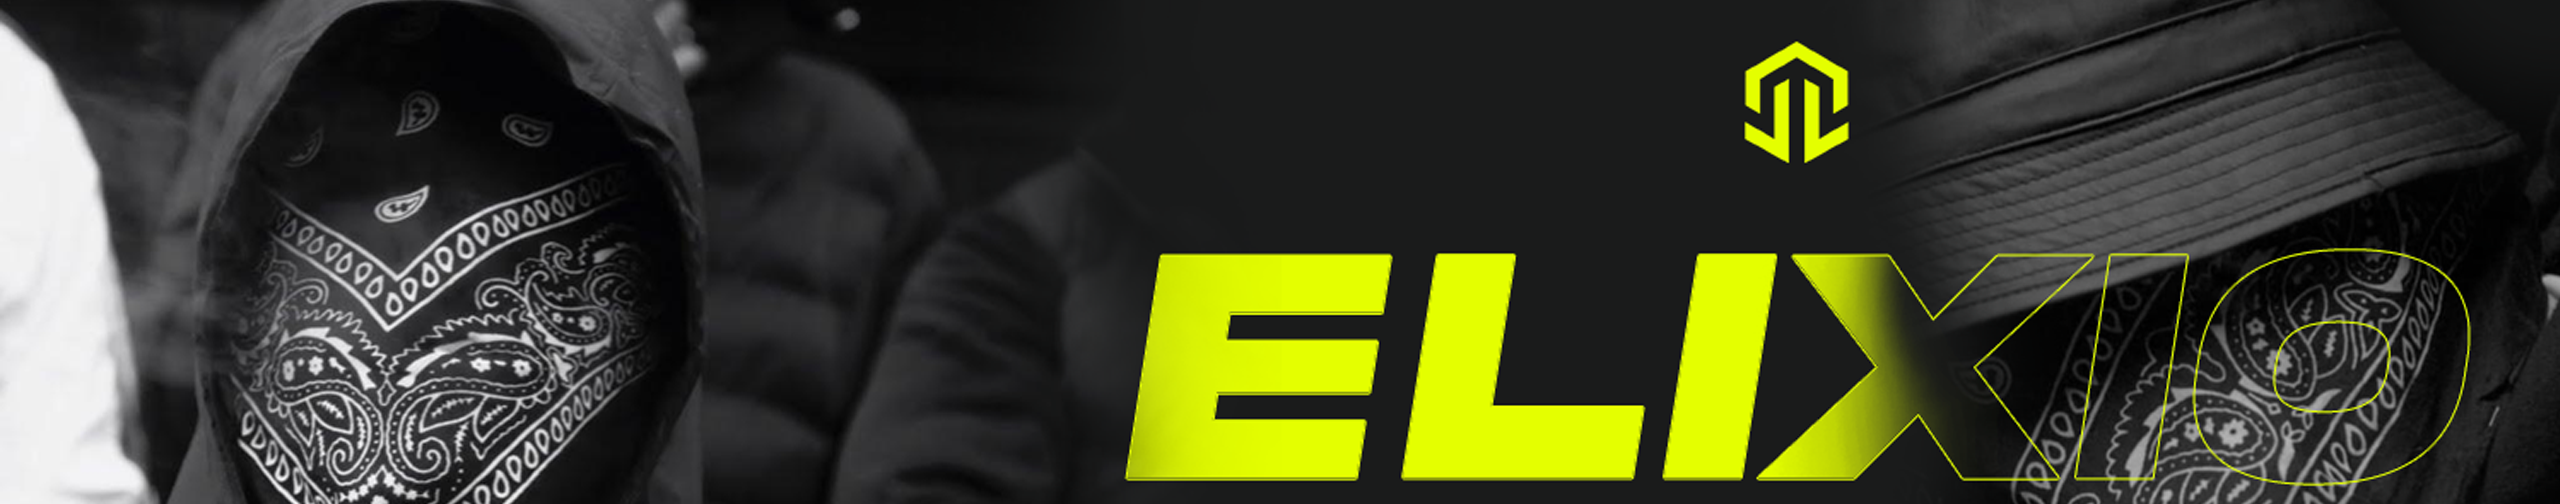 JL E Graph.'s profile banner